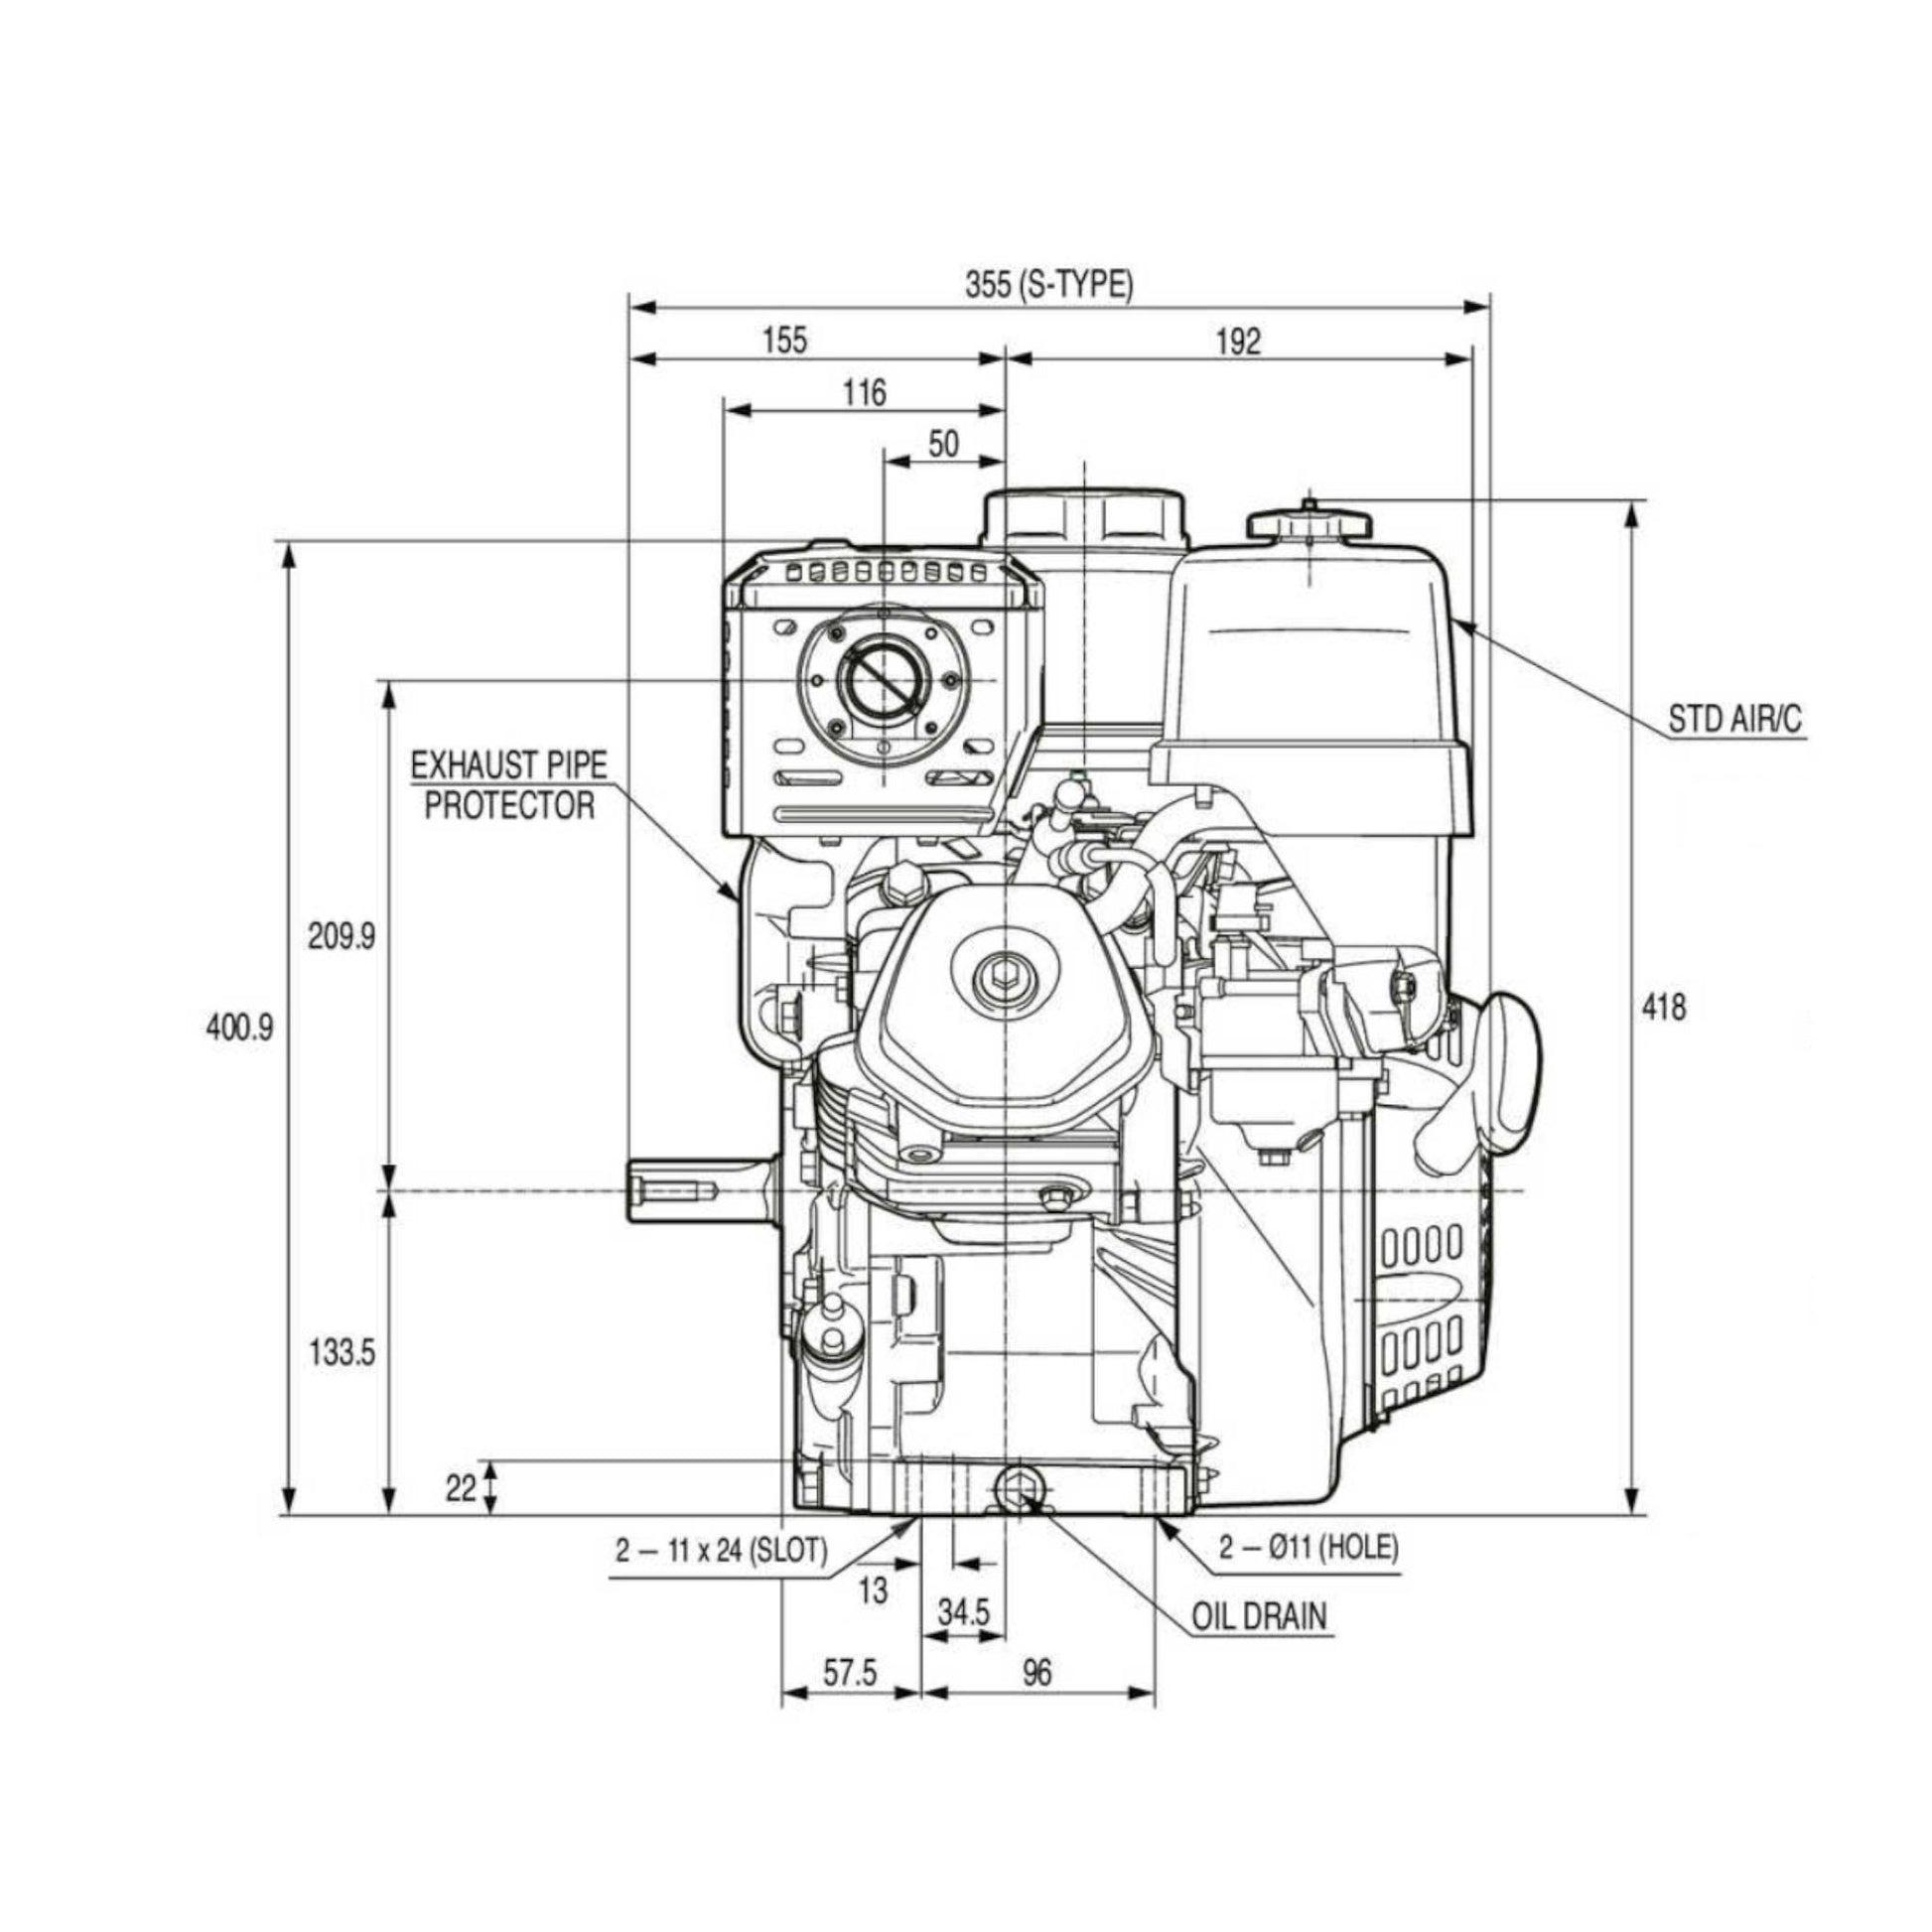 Honda GX270 9 HP Engine